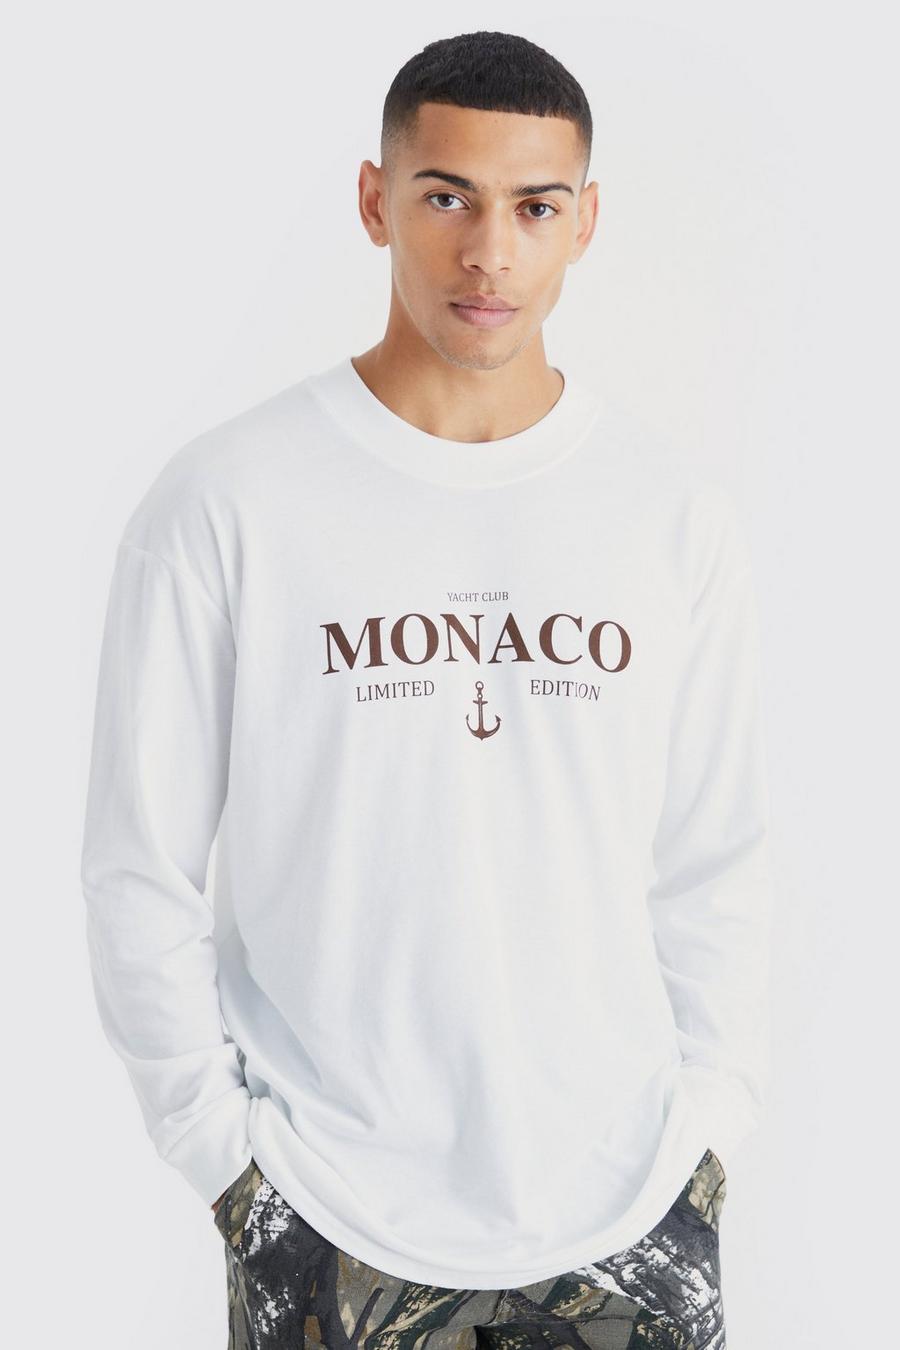 Camiseta oversize de manga larga con estampado de Monaco, White blanco